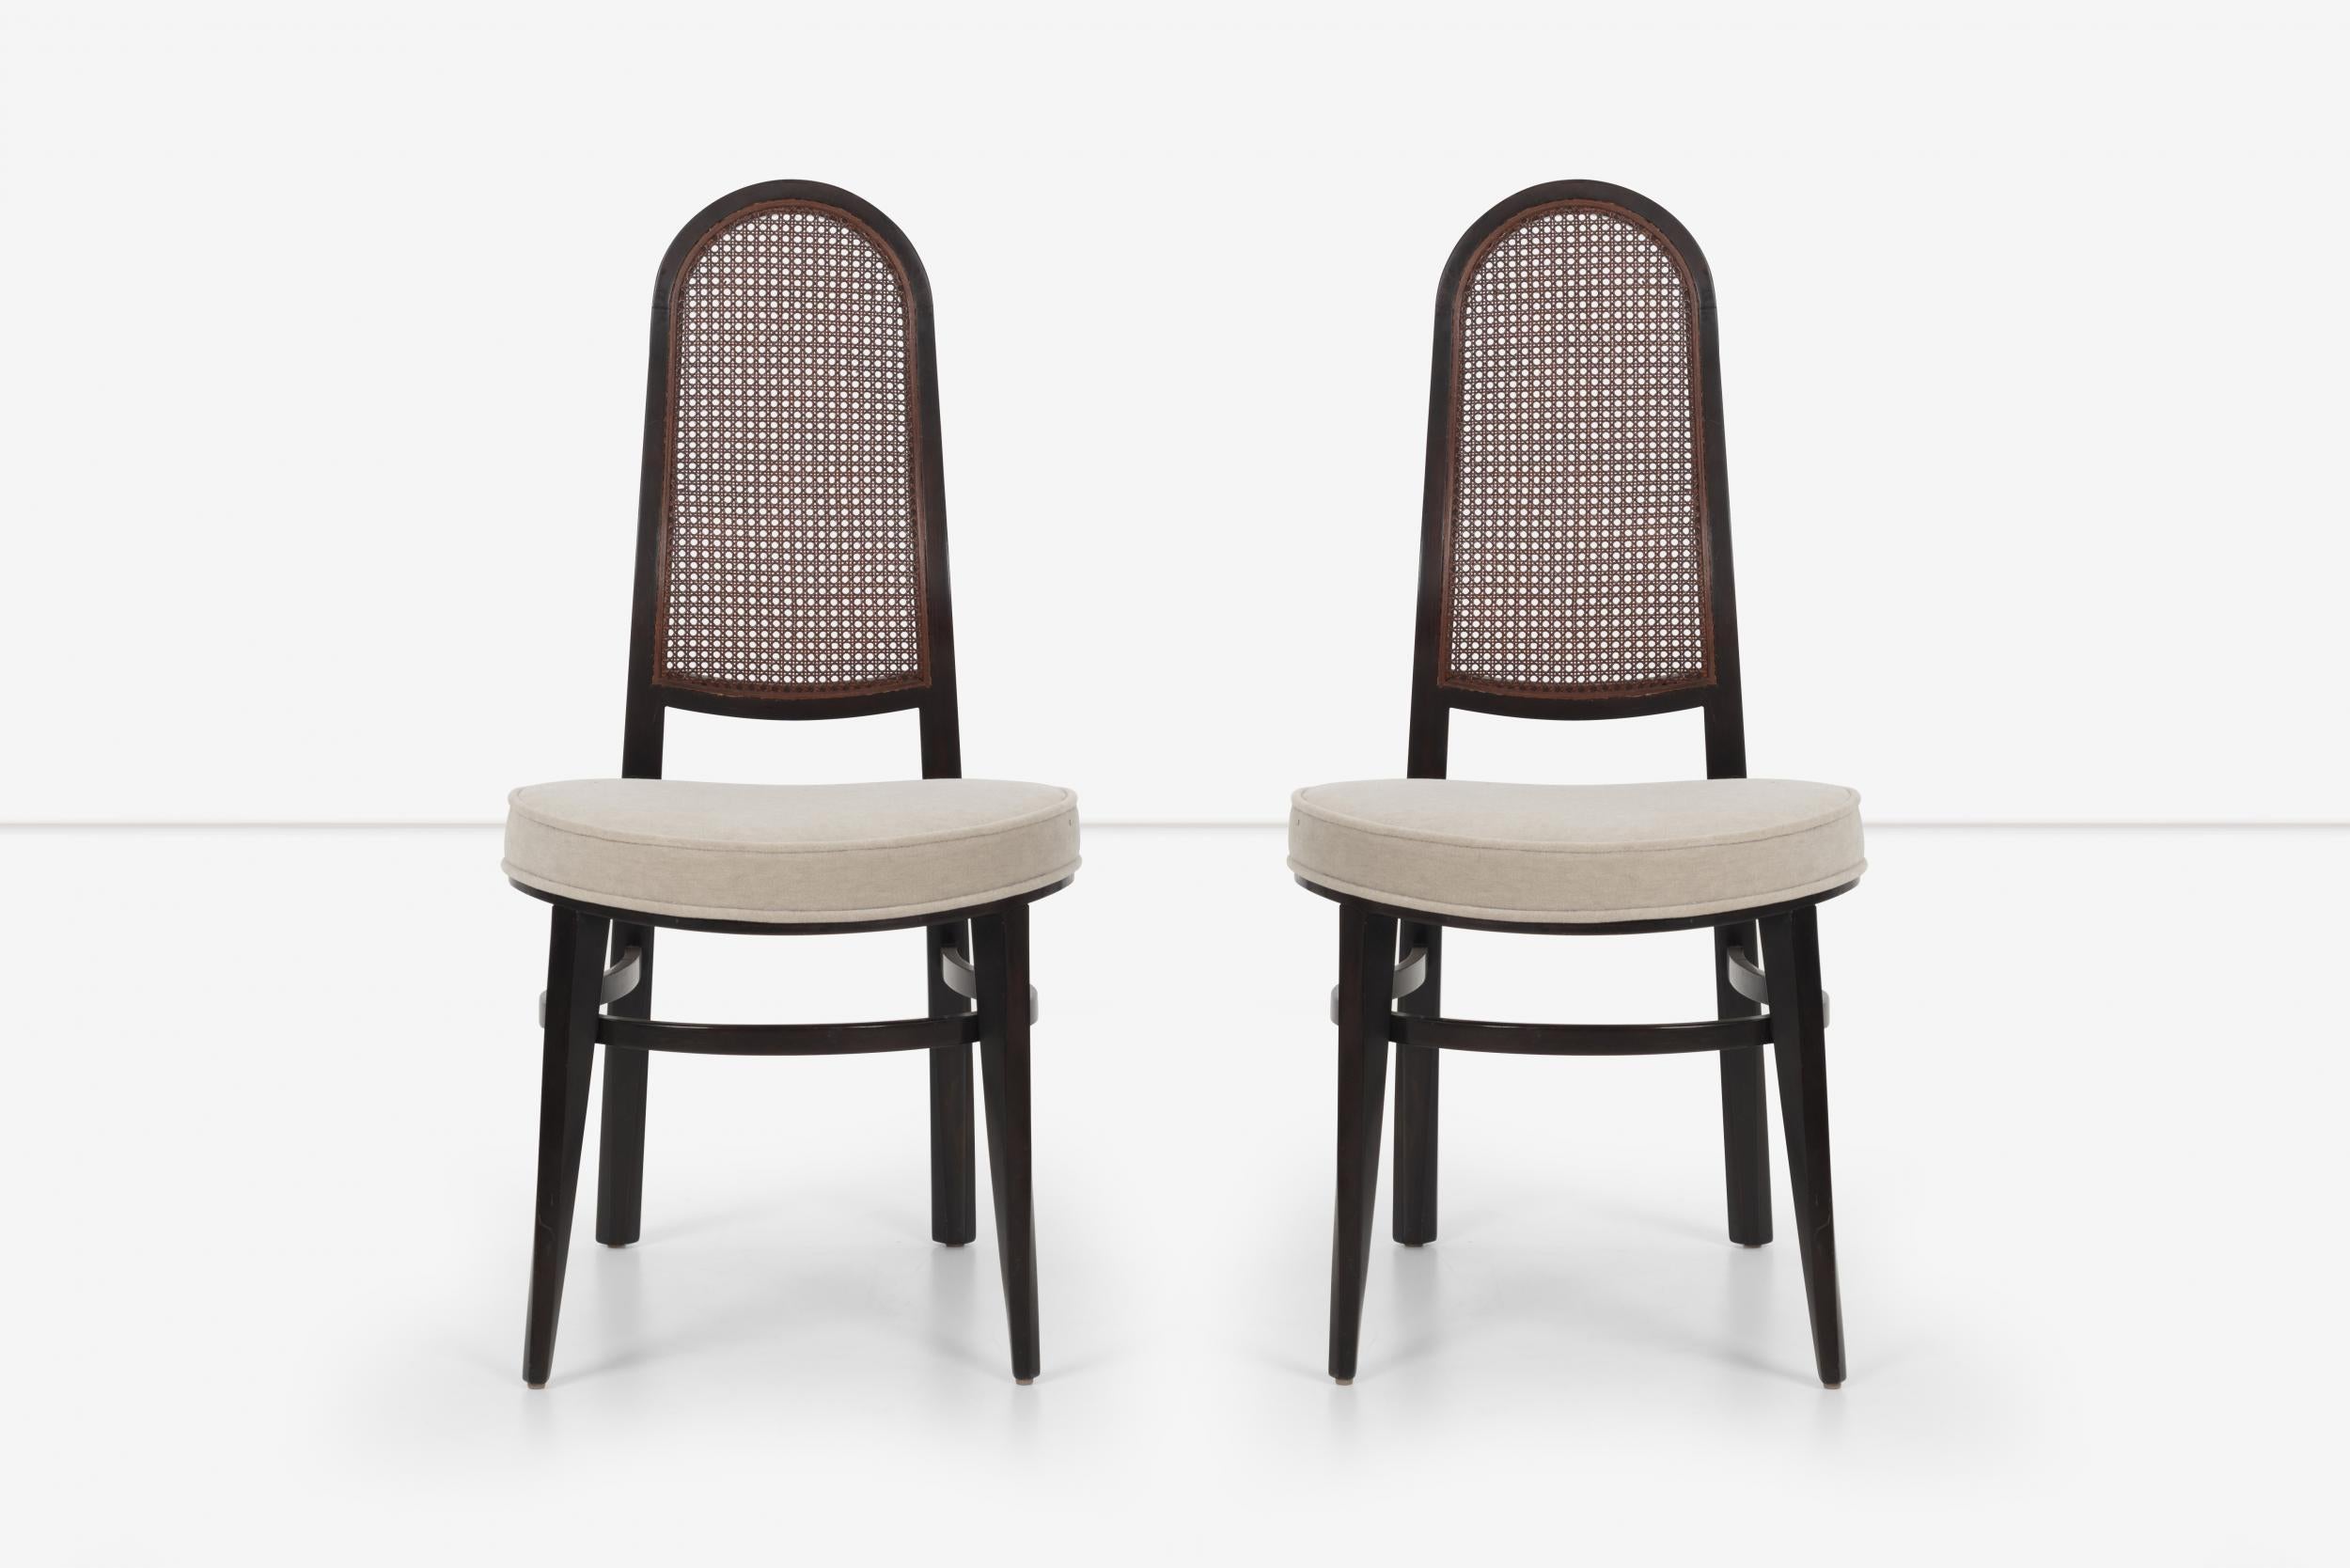 Edward Wormley für Dunbar Esszimmerstühle mit Rohrrücken, Modell 6328, mit neu gepolsterten Sitzen aus Baumwollsamt von Great Plains, Mahagoni-Rahmen mit gebogenen, mehrschichtigen Furnieren, Vorderbeine mit gedrehtem Design-Detail. Die